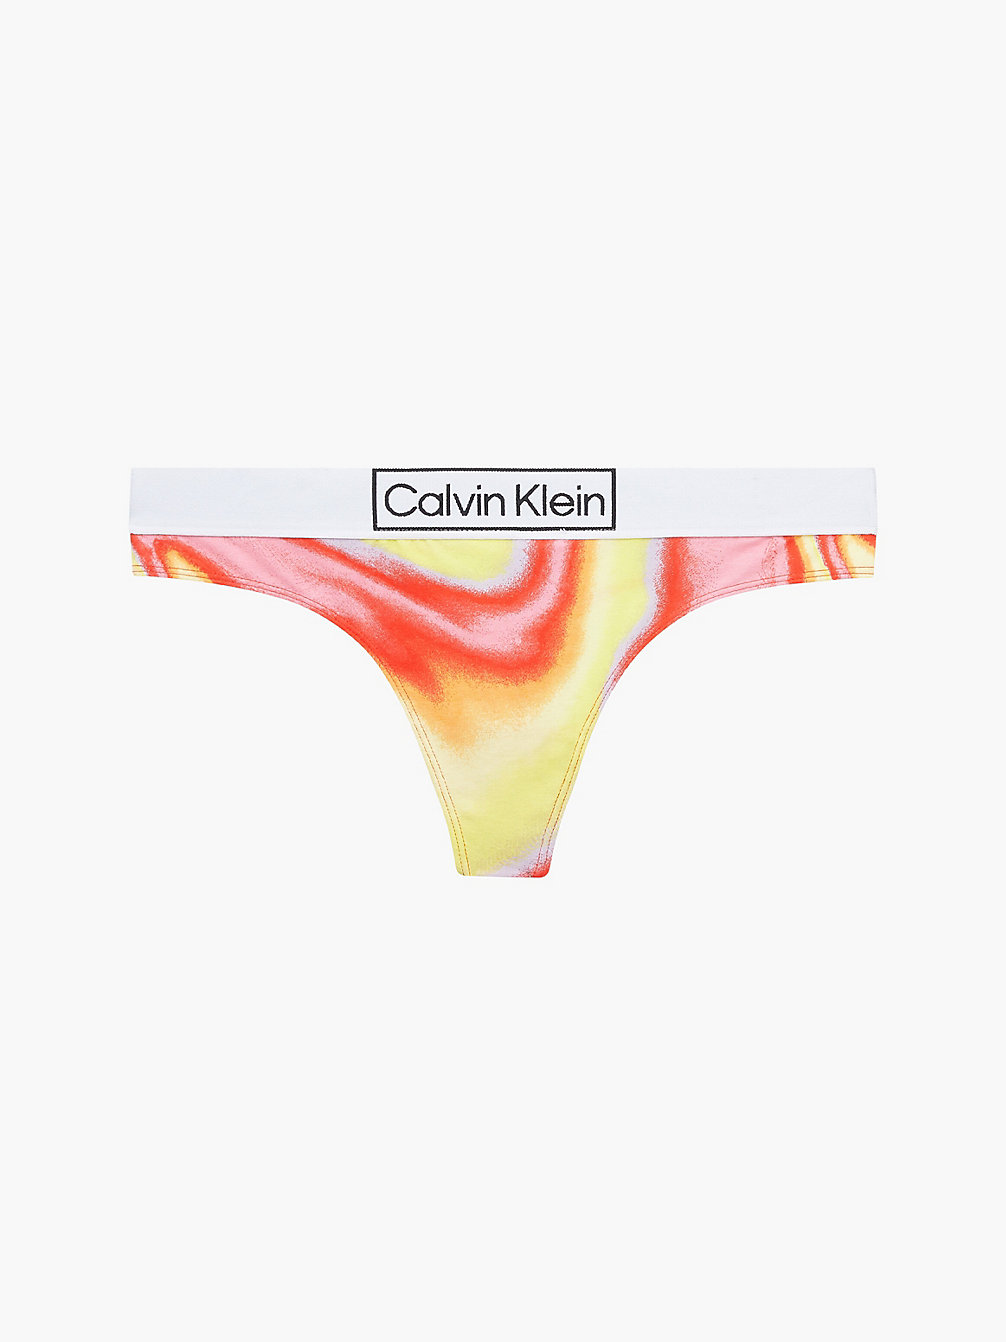 IRIDESCENT PRINT_TUSCAN TERRA COTTA String - Pride undefined Damen Calvin Klein